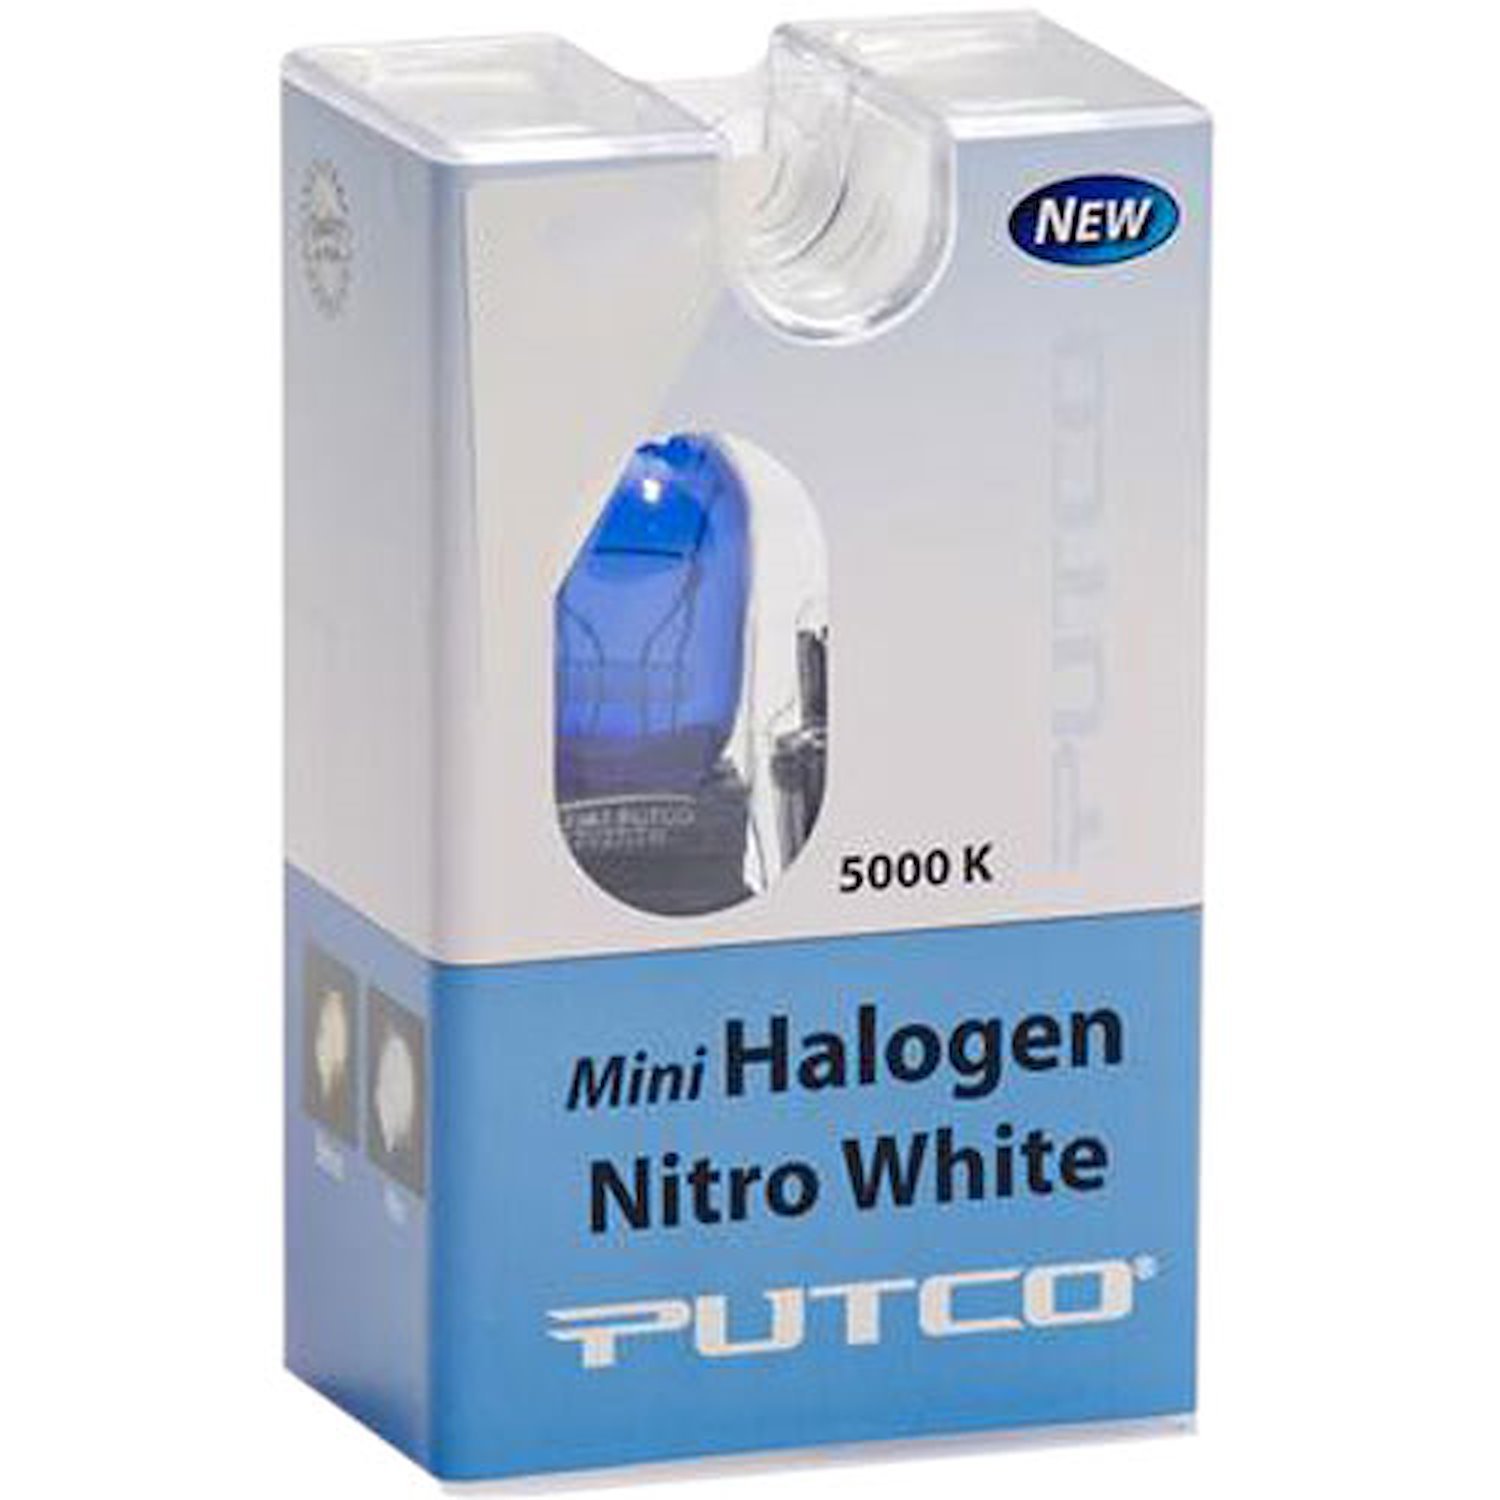 1156 Mini Halogen Bulbs Nitro White